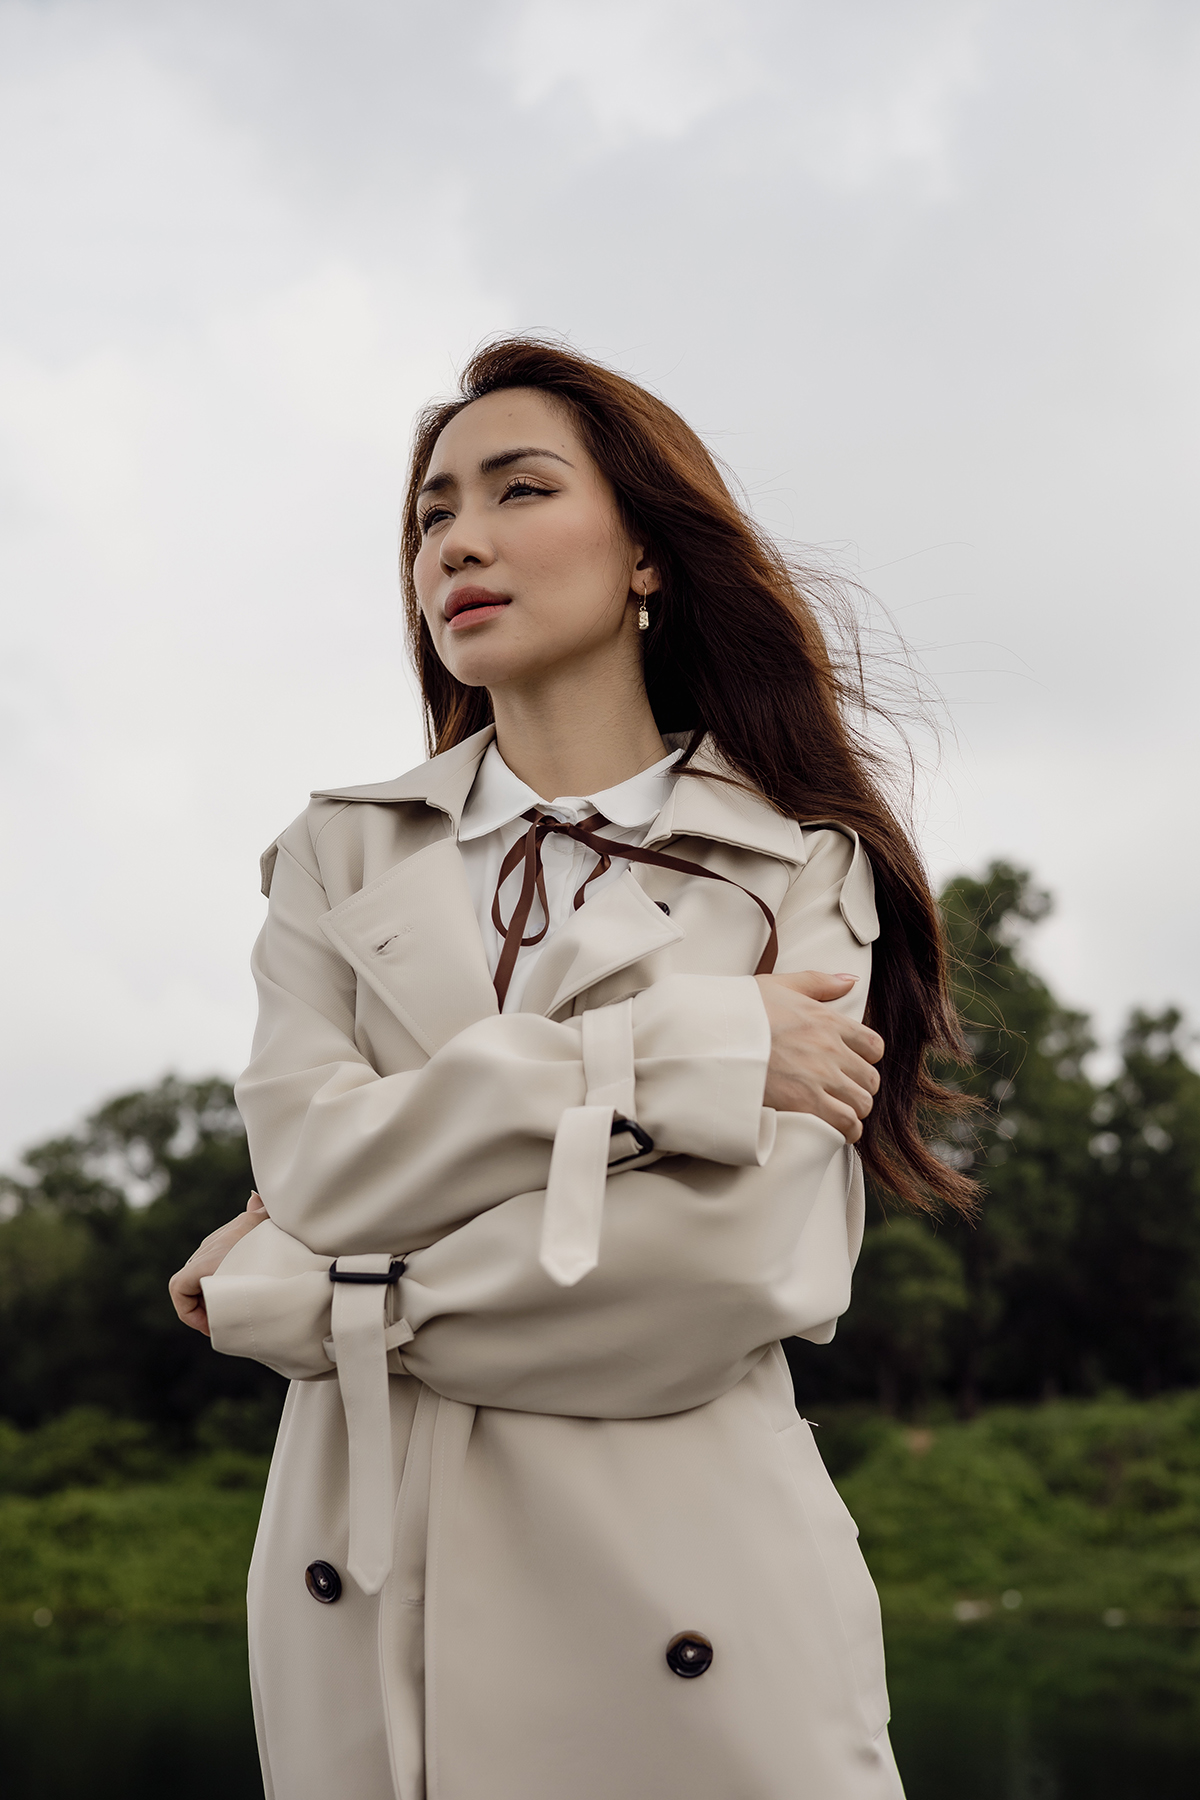 Hòa Minzy đồng cảm trong ca khúc mới “tôi thích sự tử tế và văn minh sau khi chia tay”